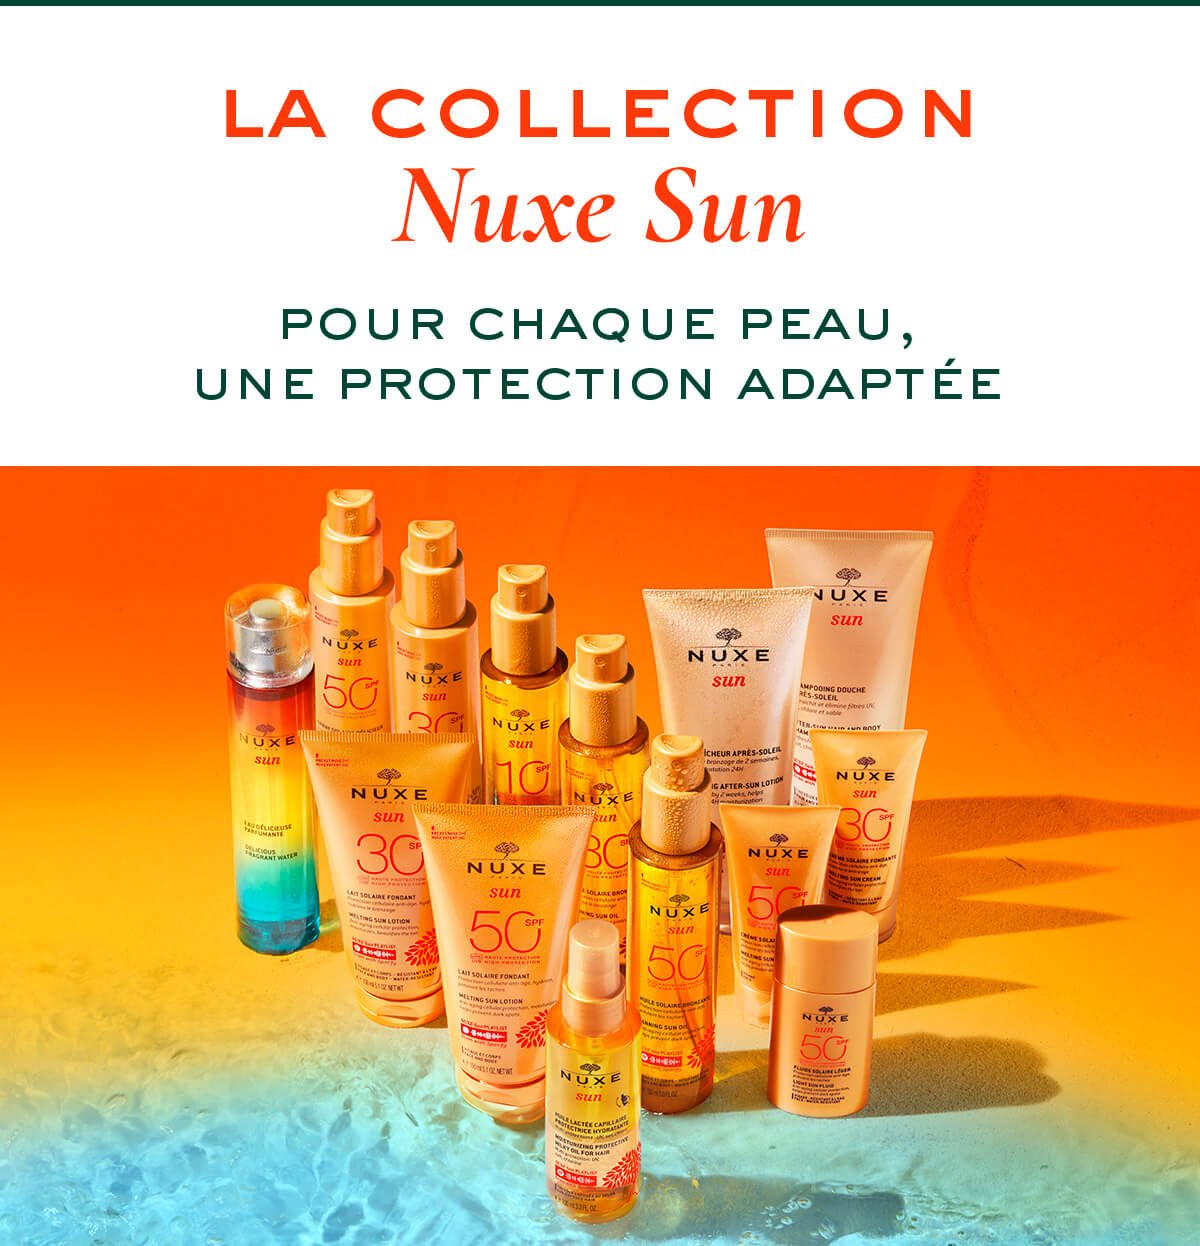 La collection NUXE Sun  Pour chaque peau, une protection adaptée